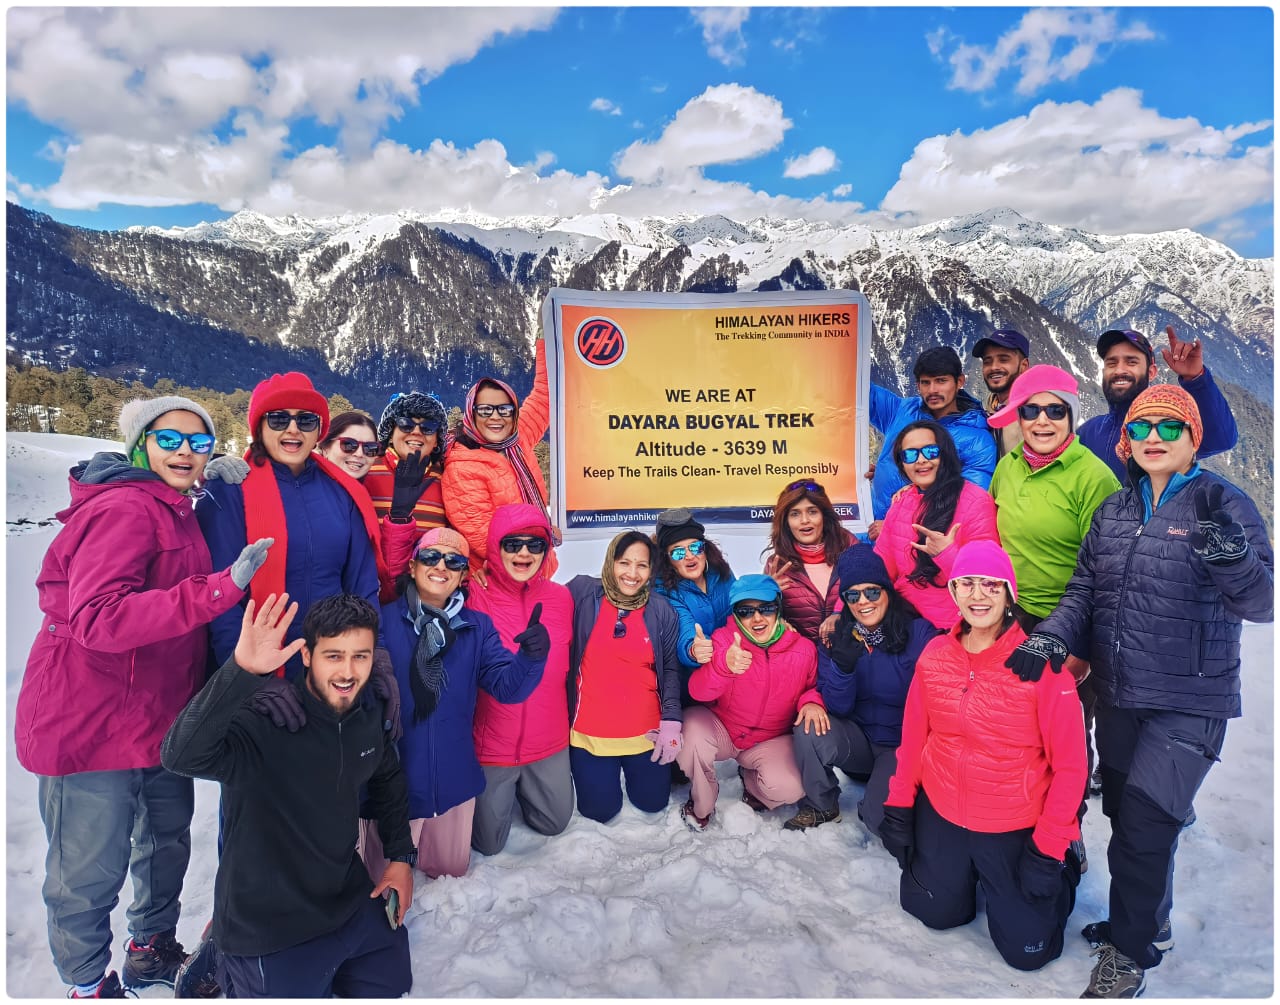 Dayara Bugyal Trek with Himalayan Hikers Banner